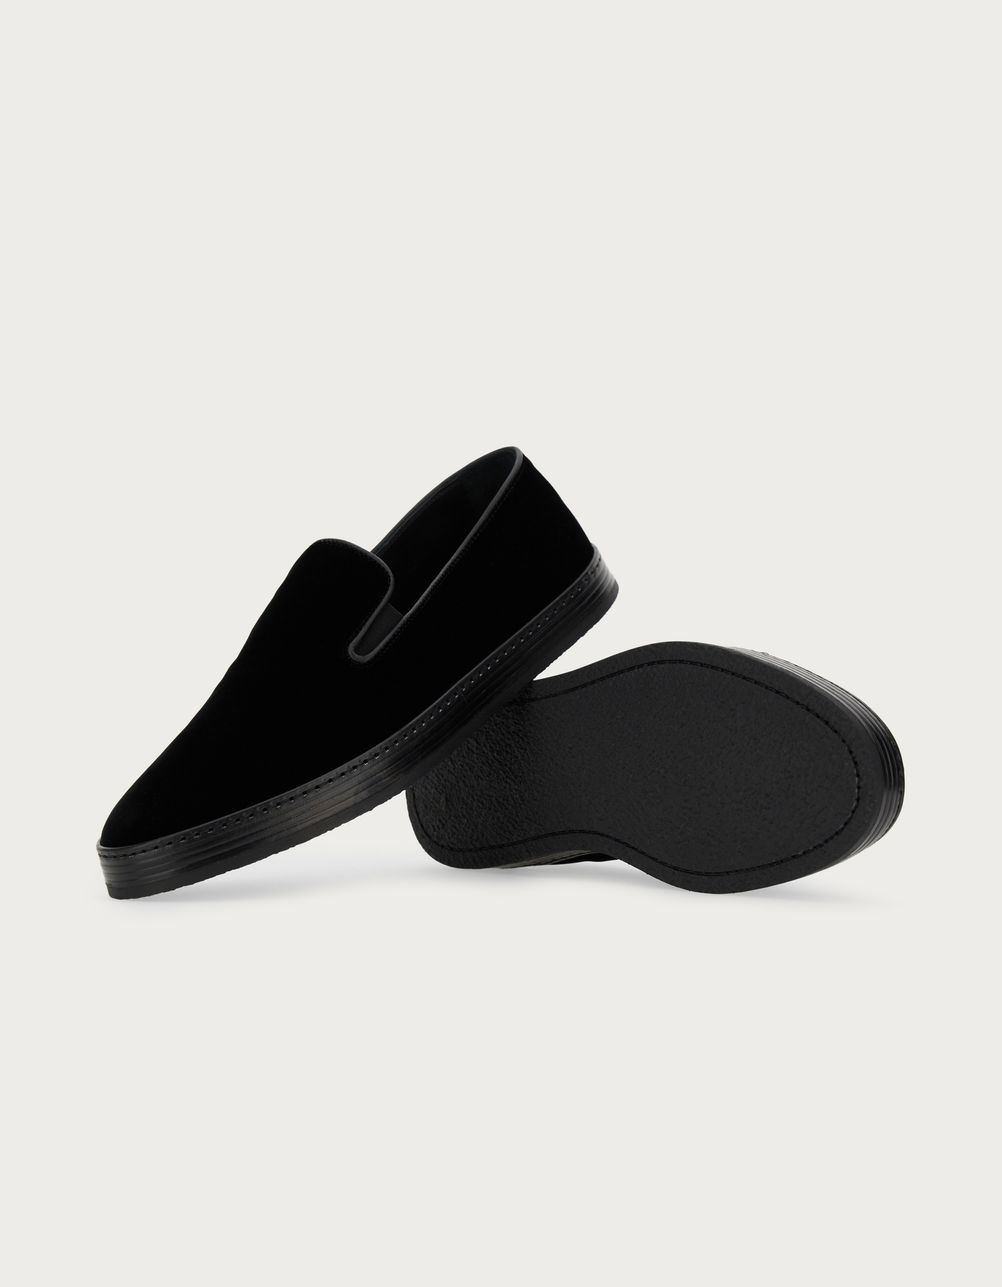 Velvet slip-on with black leather details